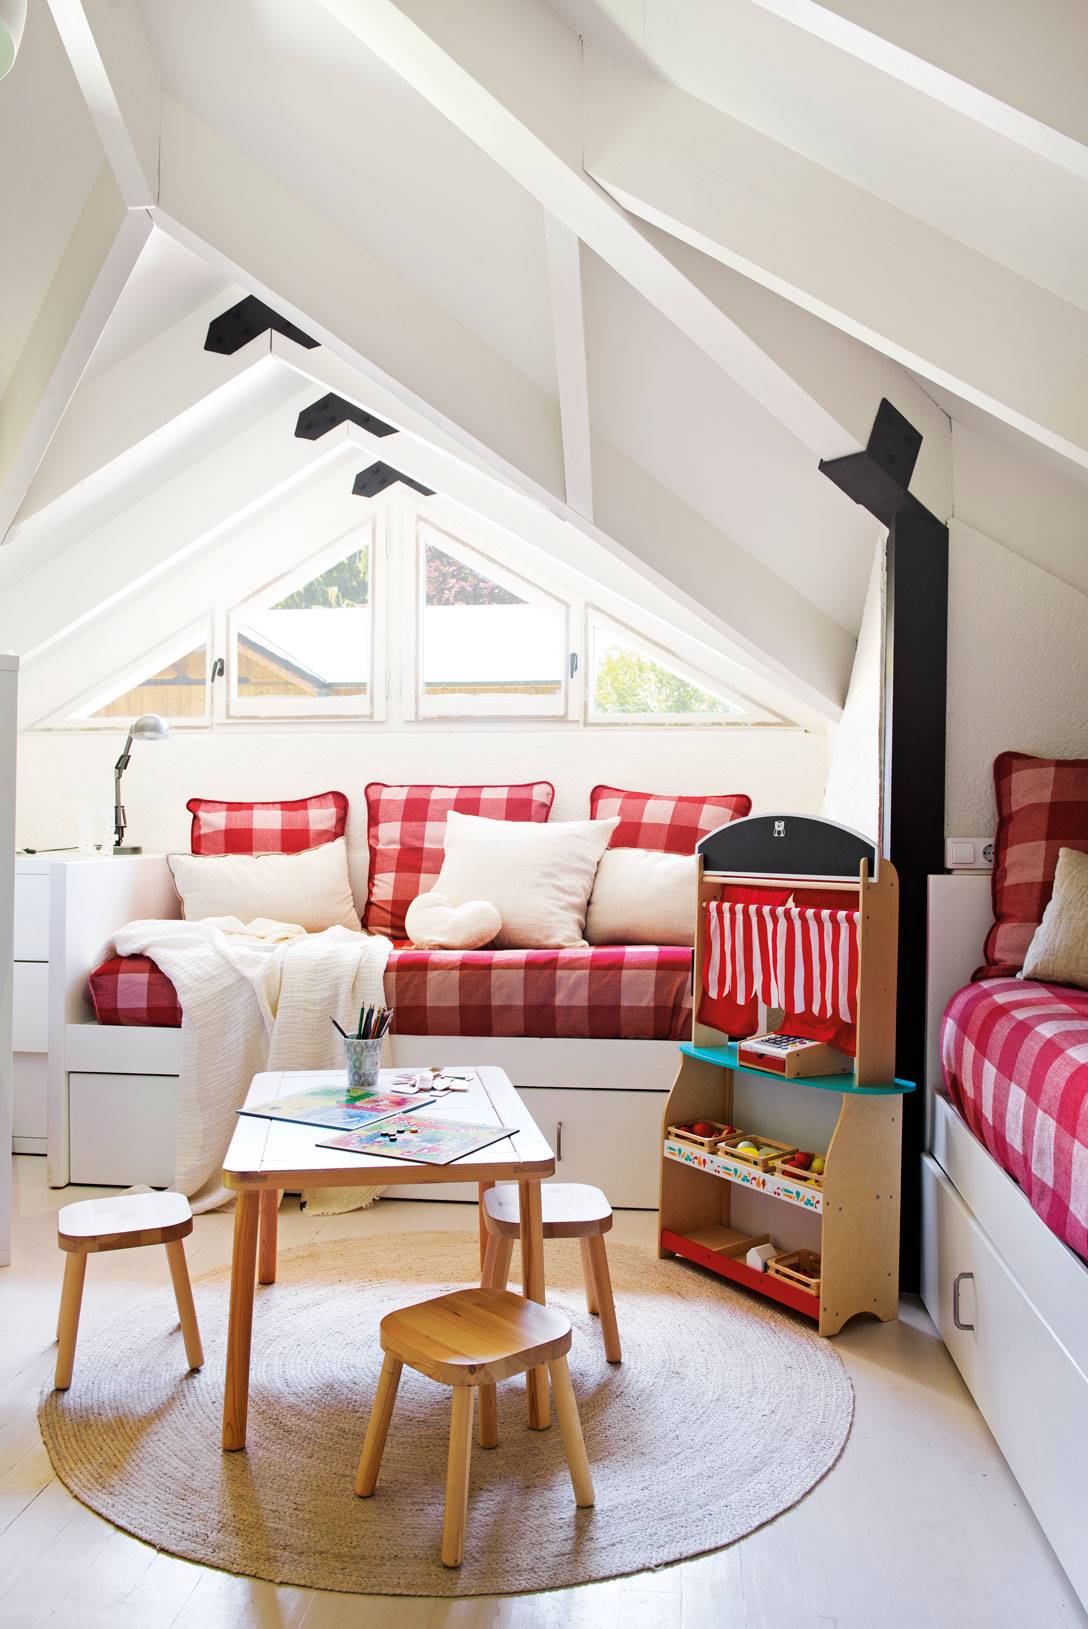 Dormitorio infantil con buhardilla en blancon y textiles vichy rojo y blanco.